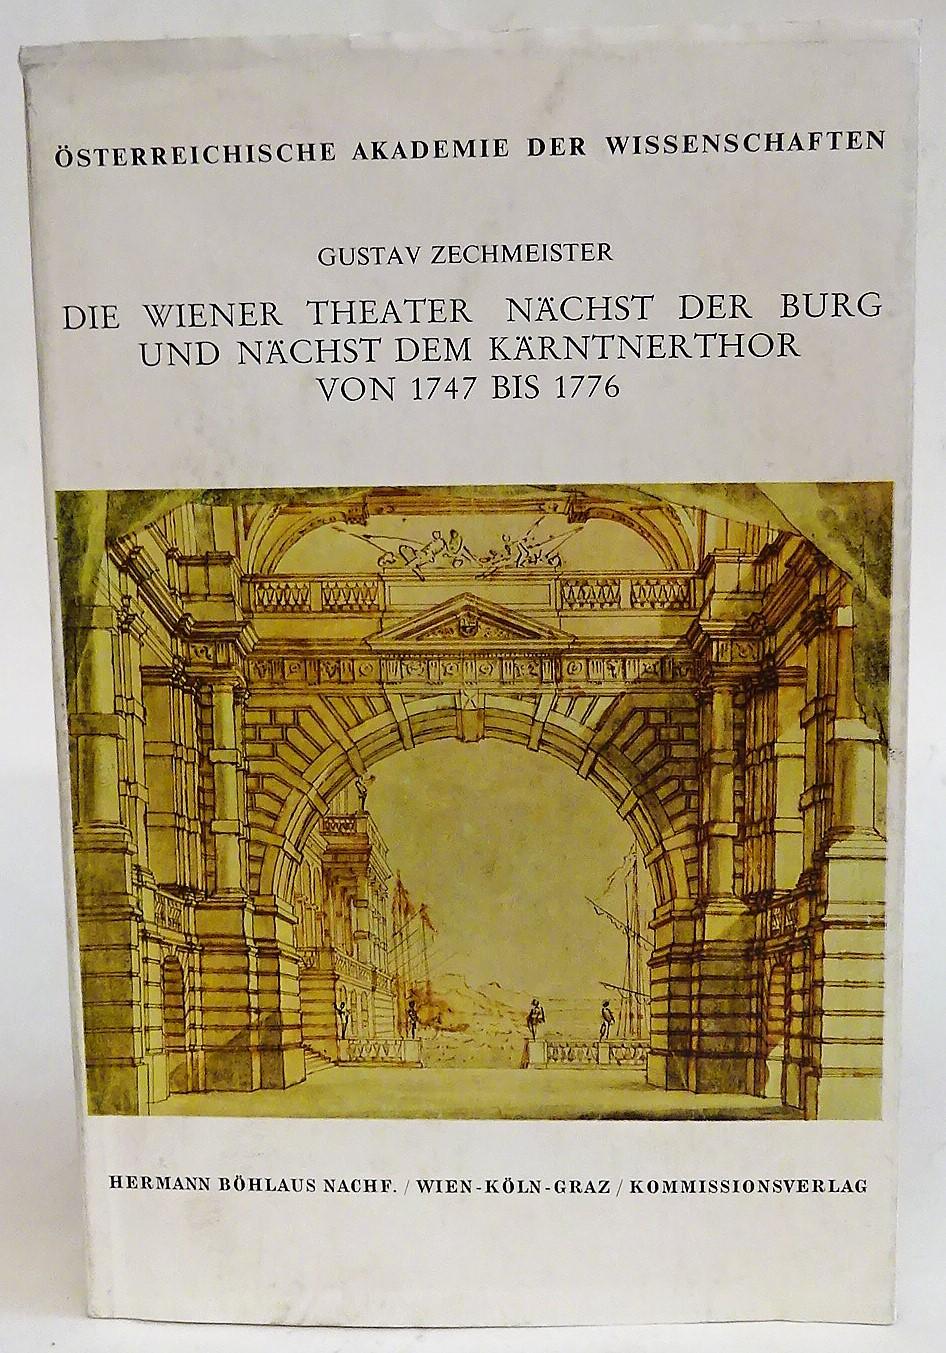 Die Wiener Theater nächst der Burg und nächst dem Kärntnerthor [Kärntnertor] von 1747 [siebzehnhundertsiebenundvierzig] bis 1776 [siebzehnhundertsechsundsiebzig] : im Anh. Chronolog. Verz. aller Ur- u. Erstaufführungen.